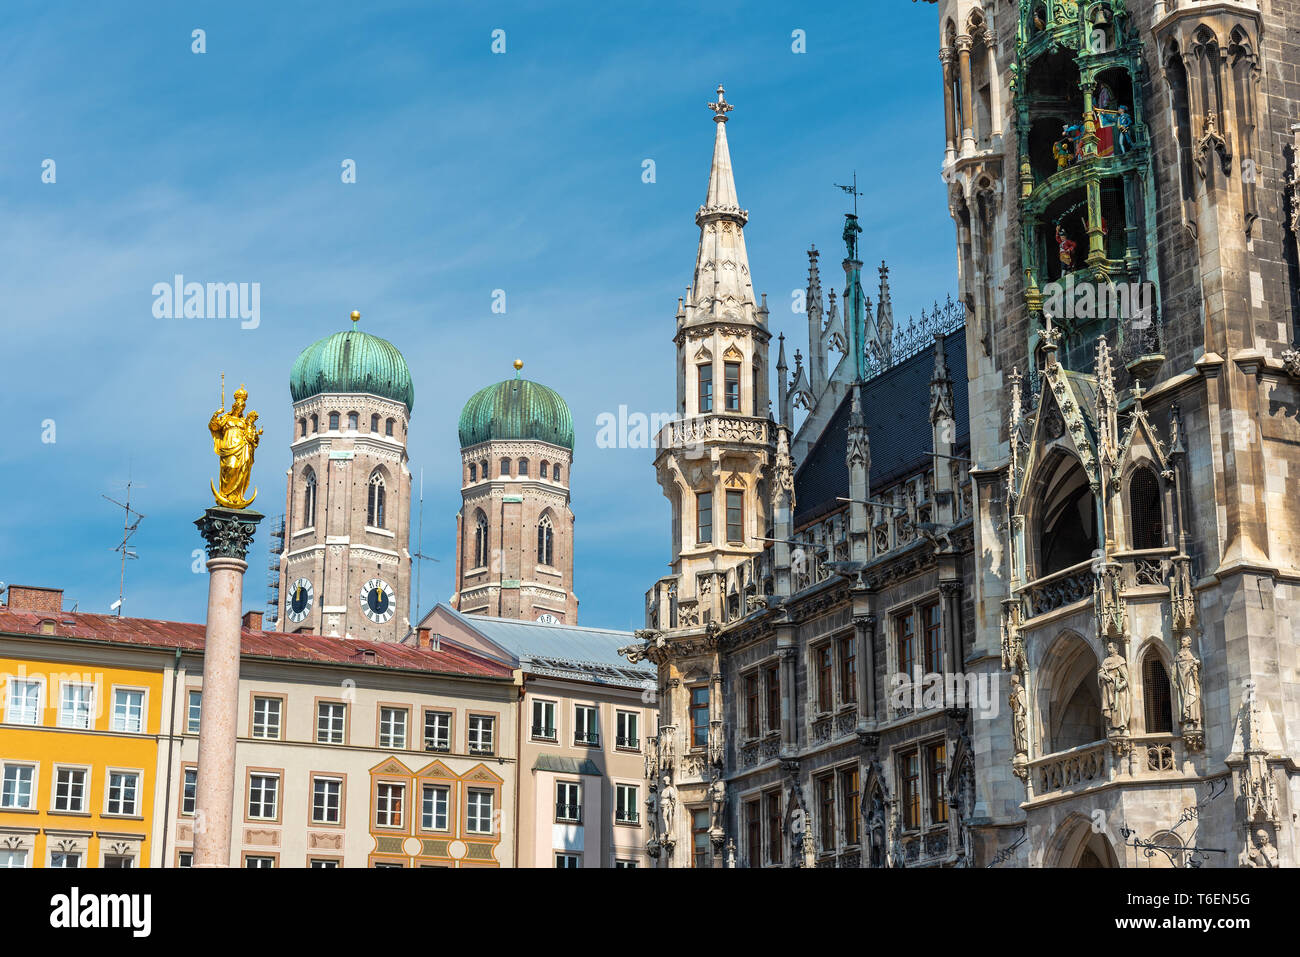 Le Golden Mary's en face de la colonne les tours de la cathédrale Notre-Dame de Munich, Allemagne Banque D'Images